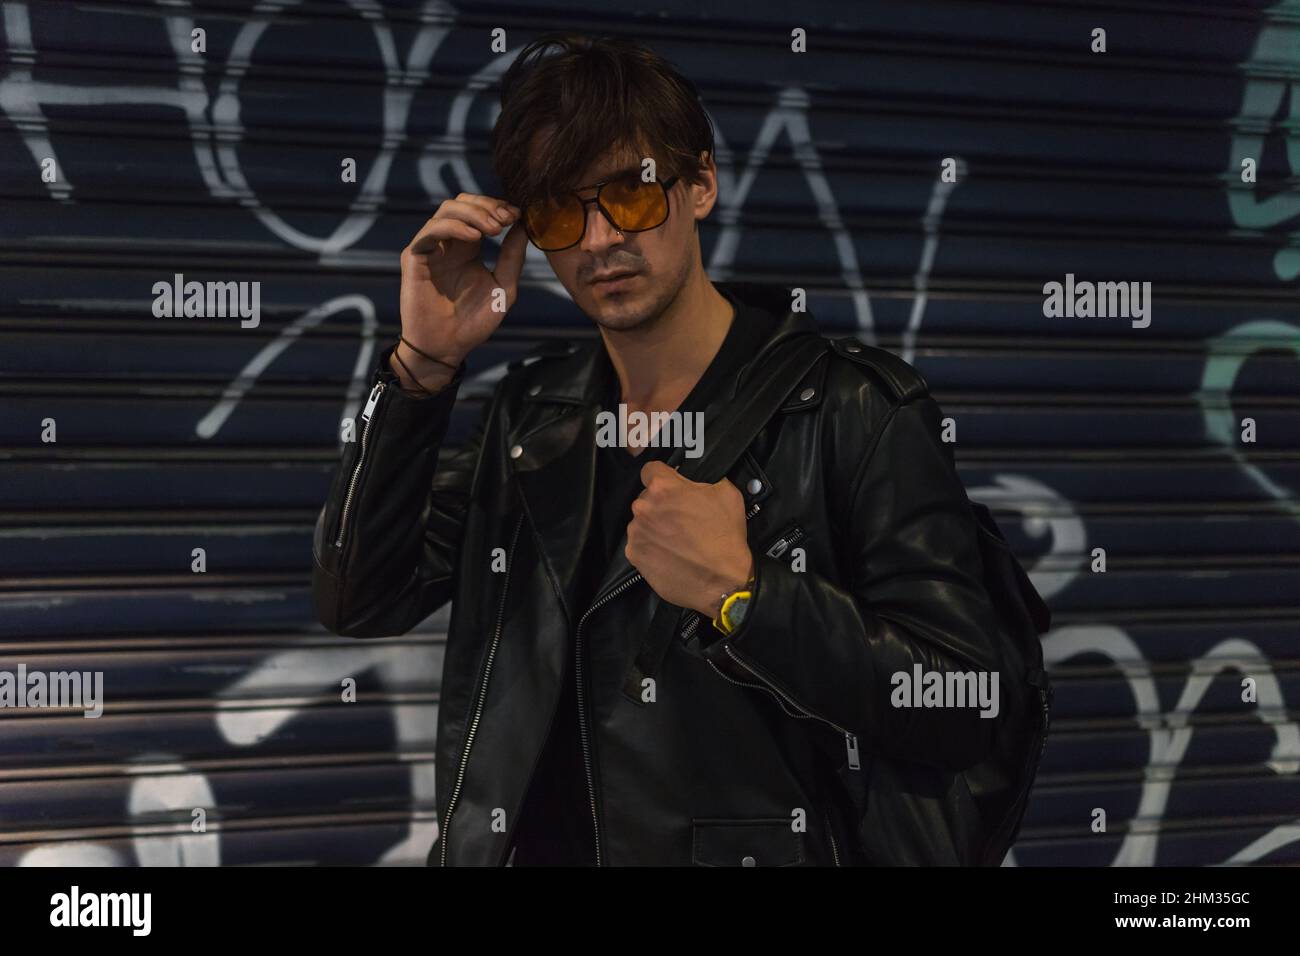 Ritratto di giovane uomo caucasico alla moda in giacca nera in pelle e occhiali da sole gialli. In piedi vicino al muro con graffiti. Foto di alta qualità Foto Stock